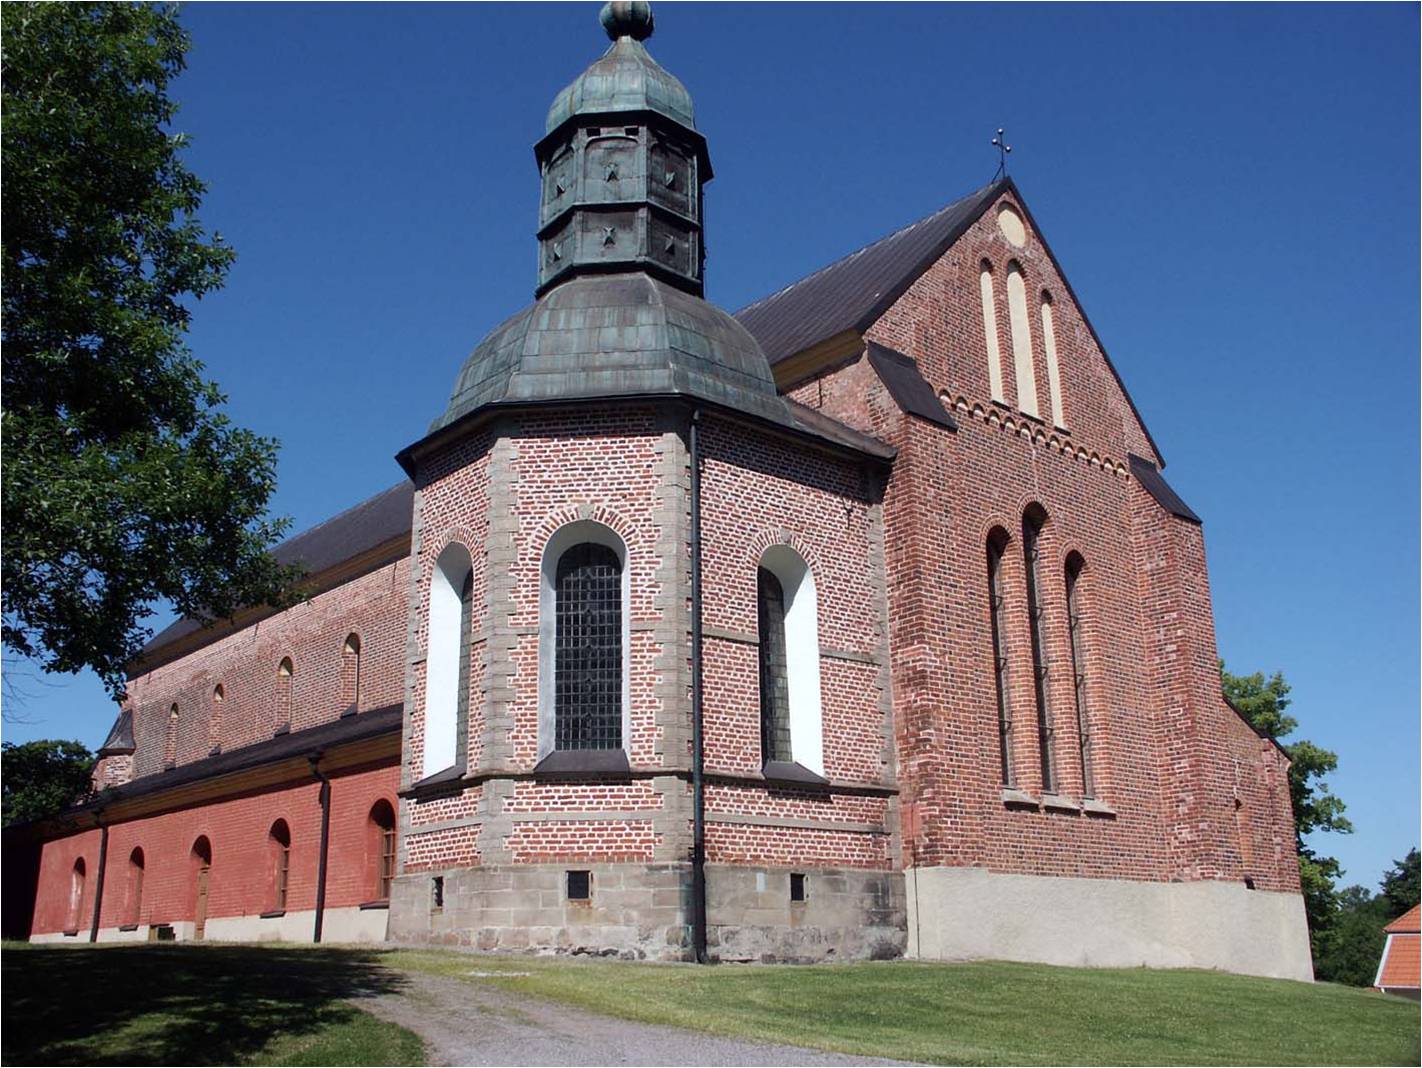 Gravkoret över Herman Wrangel byggdes på 1630-talet i renässansstil med fasader 
av tegel och sandsten. Den gotiska trefönstergruppen i kyrkans korgavel är typisk 
för den cisterciensiska arkitekturen. 
